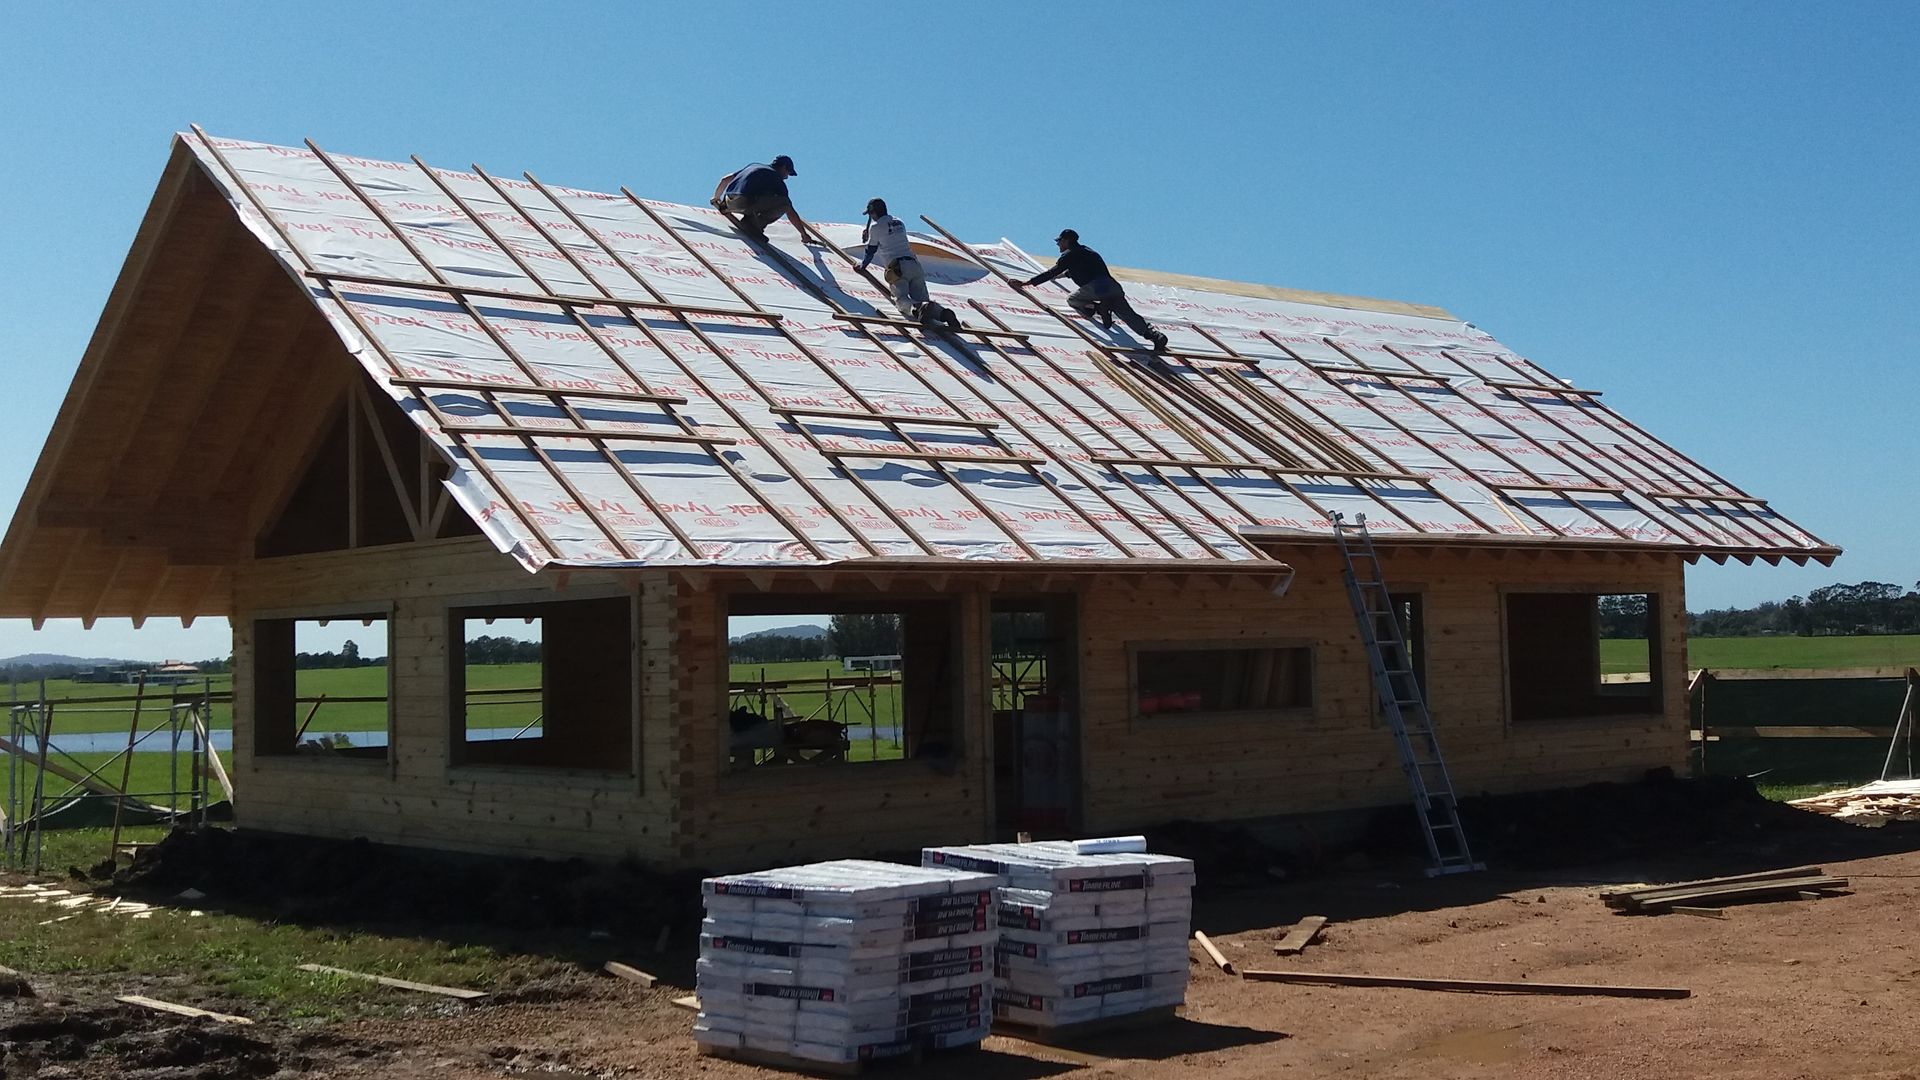 Casa en Uruguay (Construcción en 15 días) Superficie cubierta de 130 m2, Patagonia Log Homes - Arquitectos - Neuquén Patagonia Log Homes - Arquitectos - Neuquén 木造住宅 木 木目調